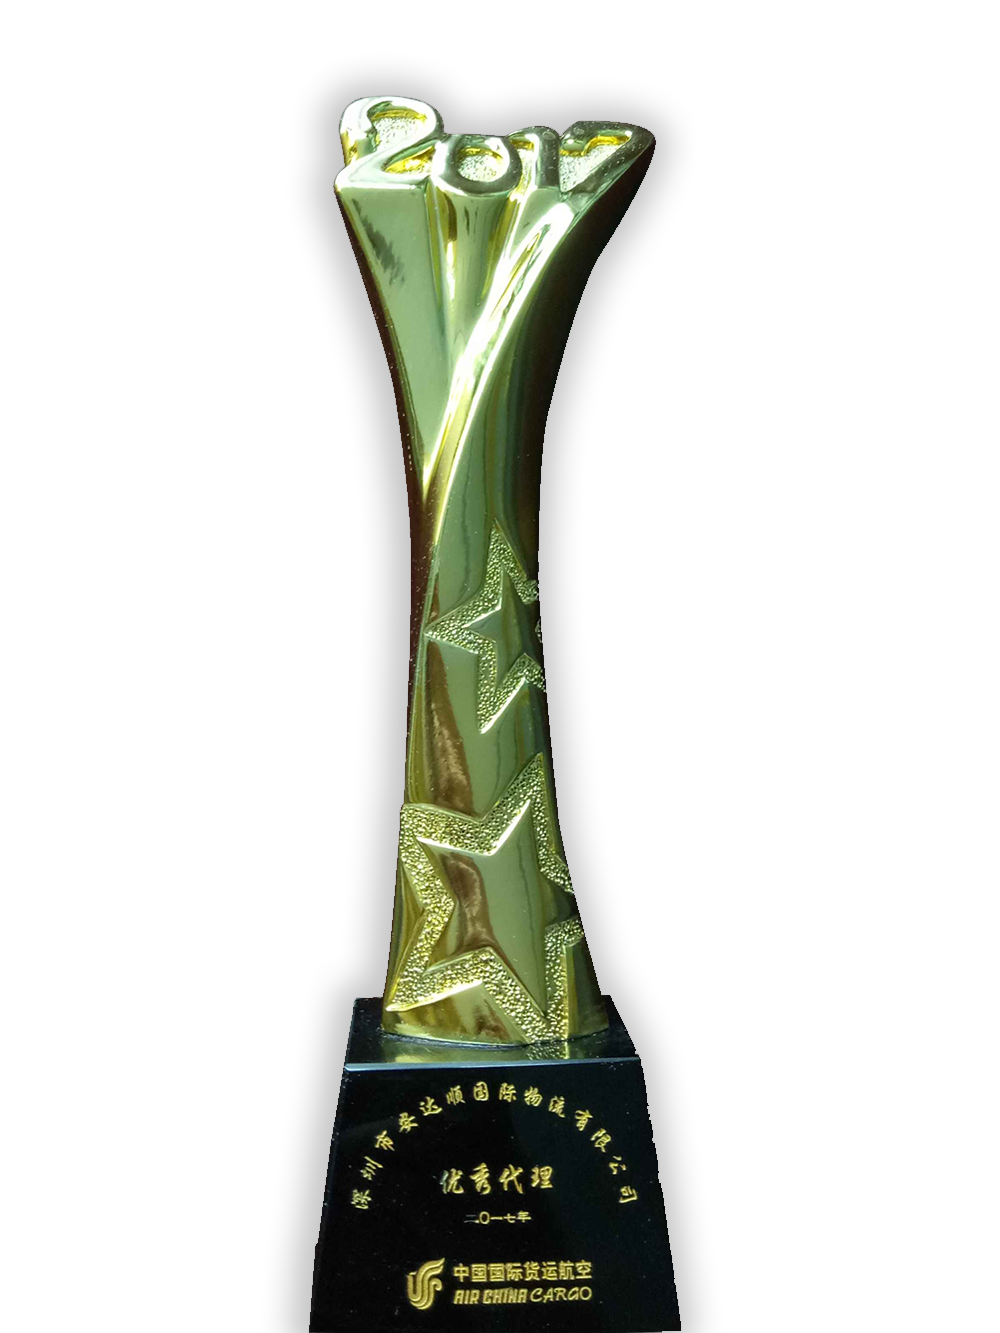 17、2017-国航 获得中国国际货运航空优秀代理人奖Receives the Excellent Agent Award of Air China Cargo in 2017.png